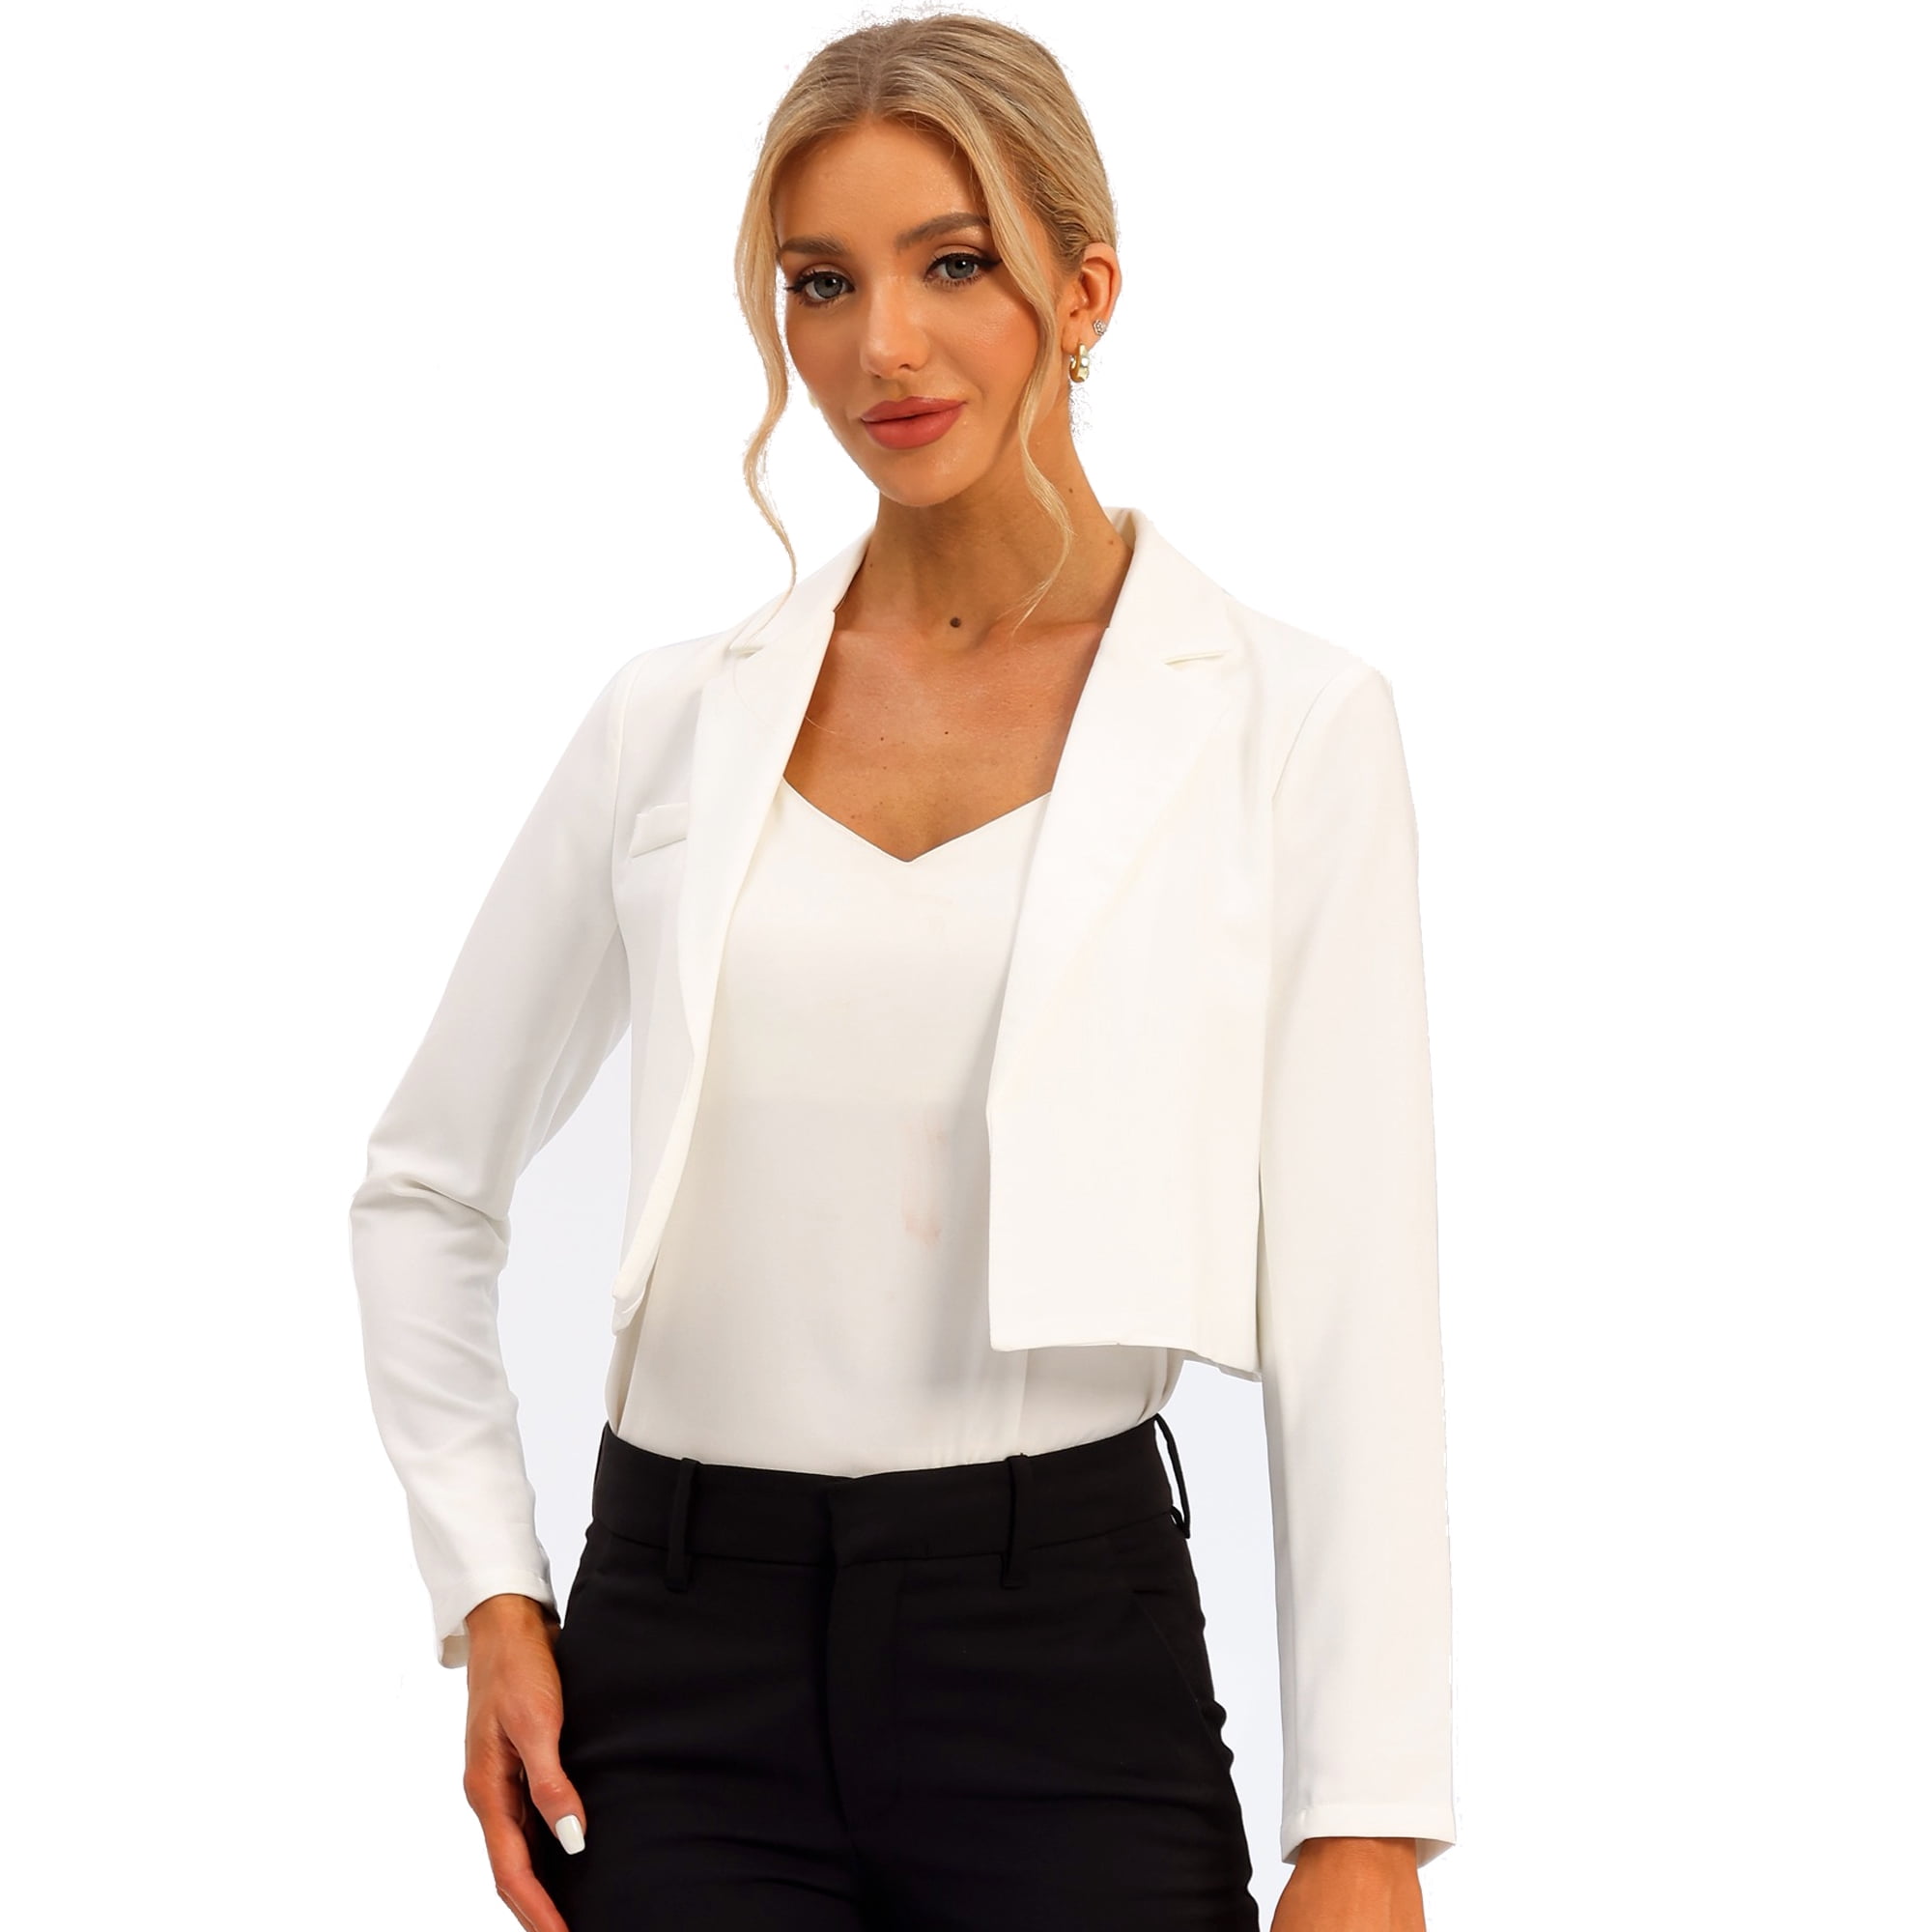 Blazers - Chaqueta de manga larga con solapa para mujer, estilo casual,  para trabajo, oficina, parte delantera abierta, chaqueta tipo blazer